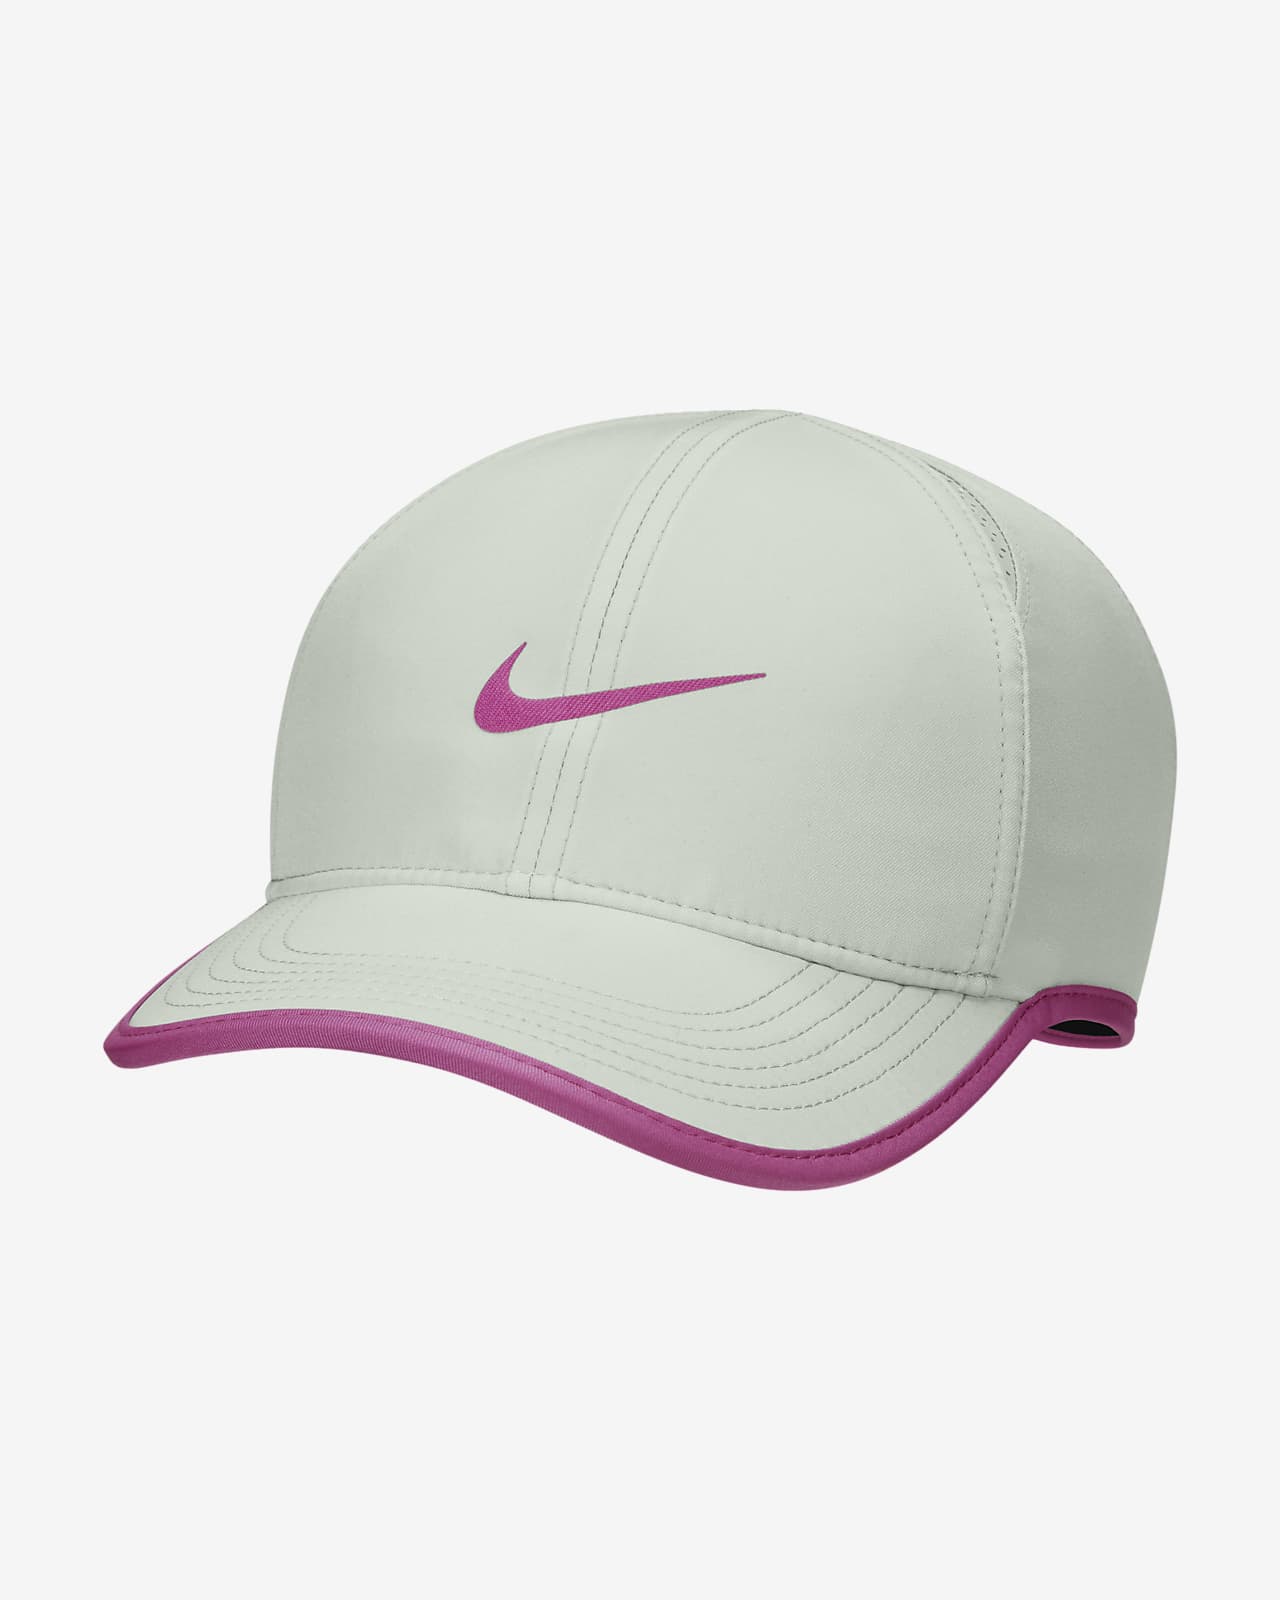 Nike Featherlight Adjustable Hat.